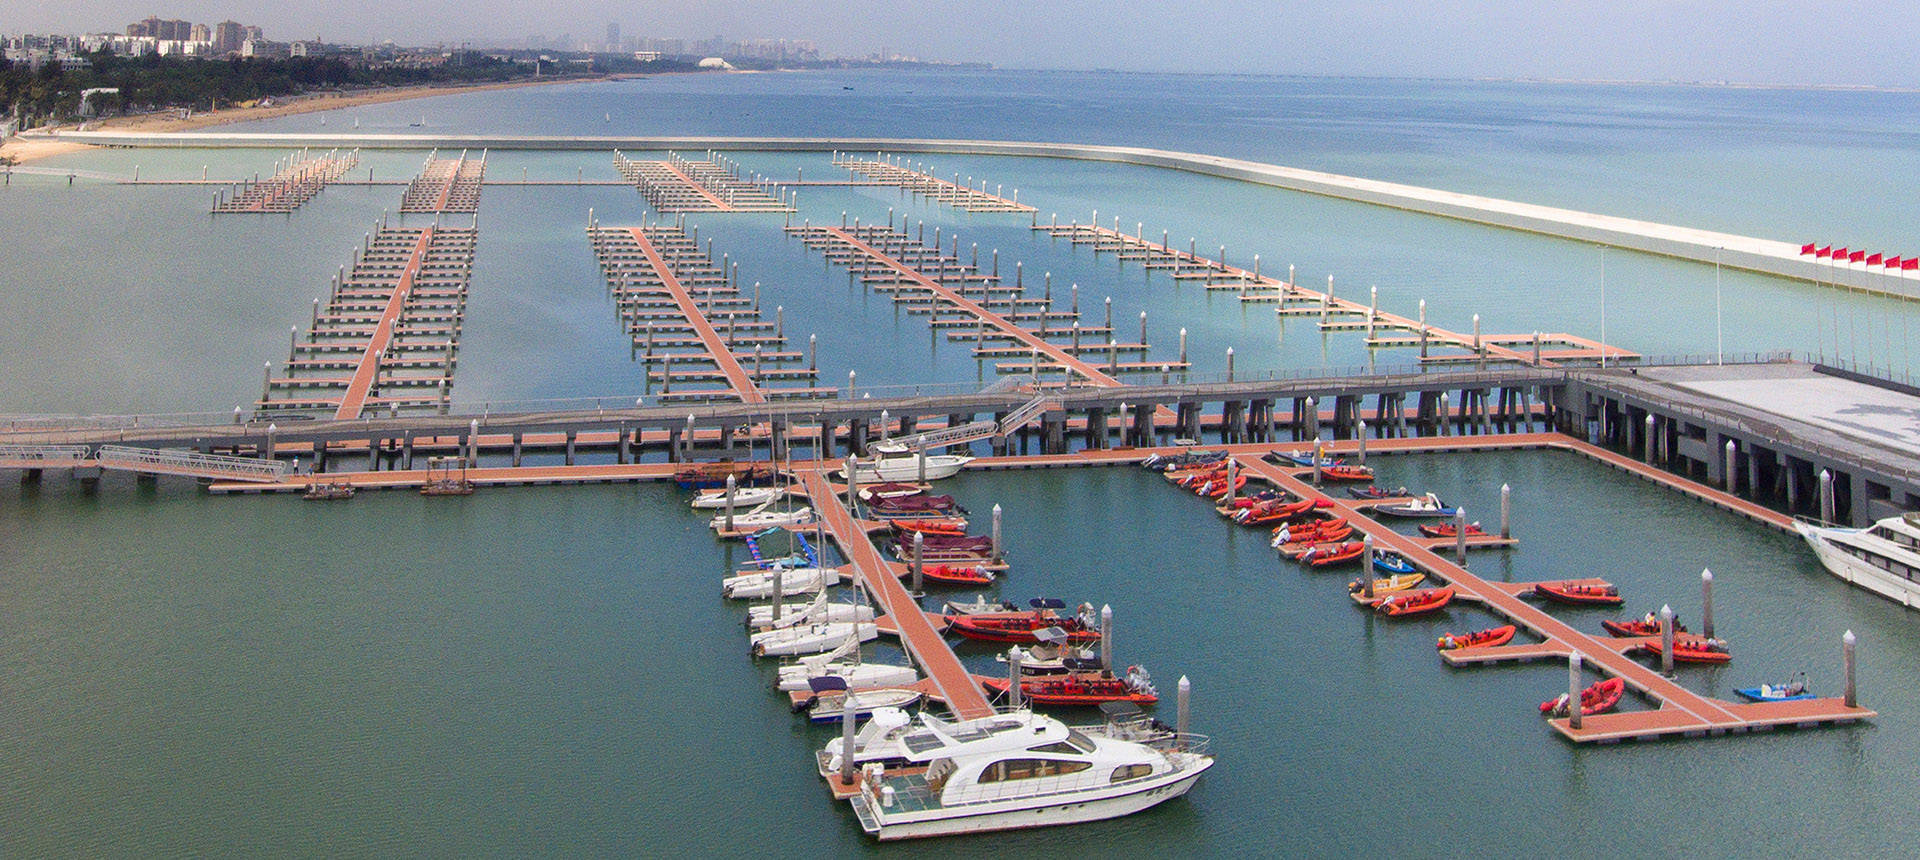 海润游艇码头:游艇码头的特点